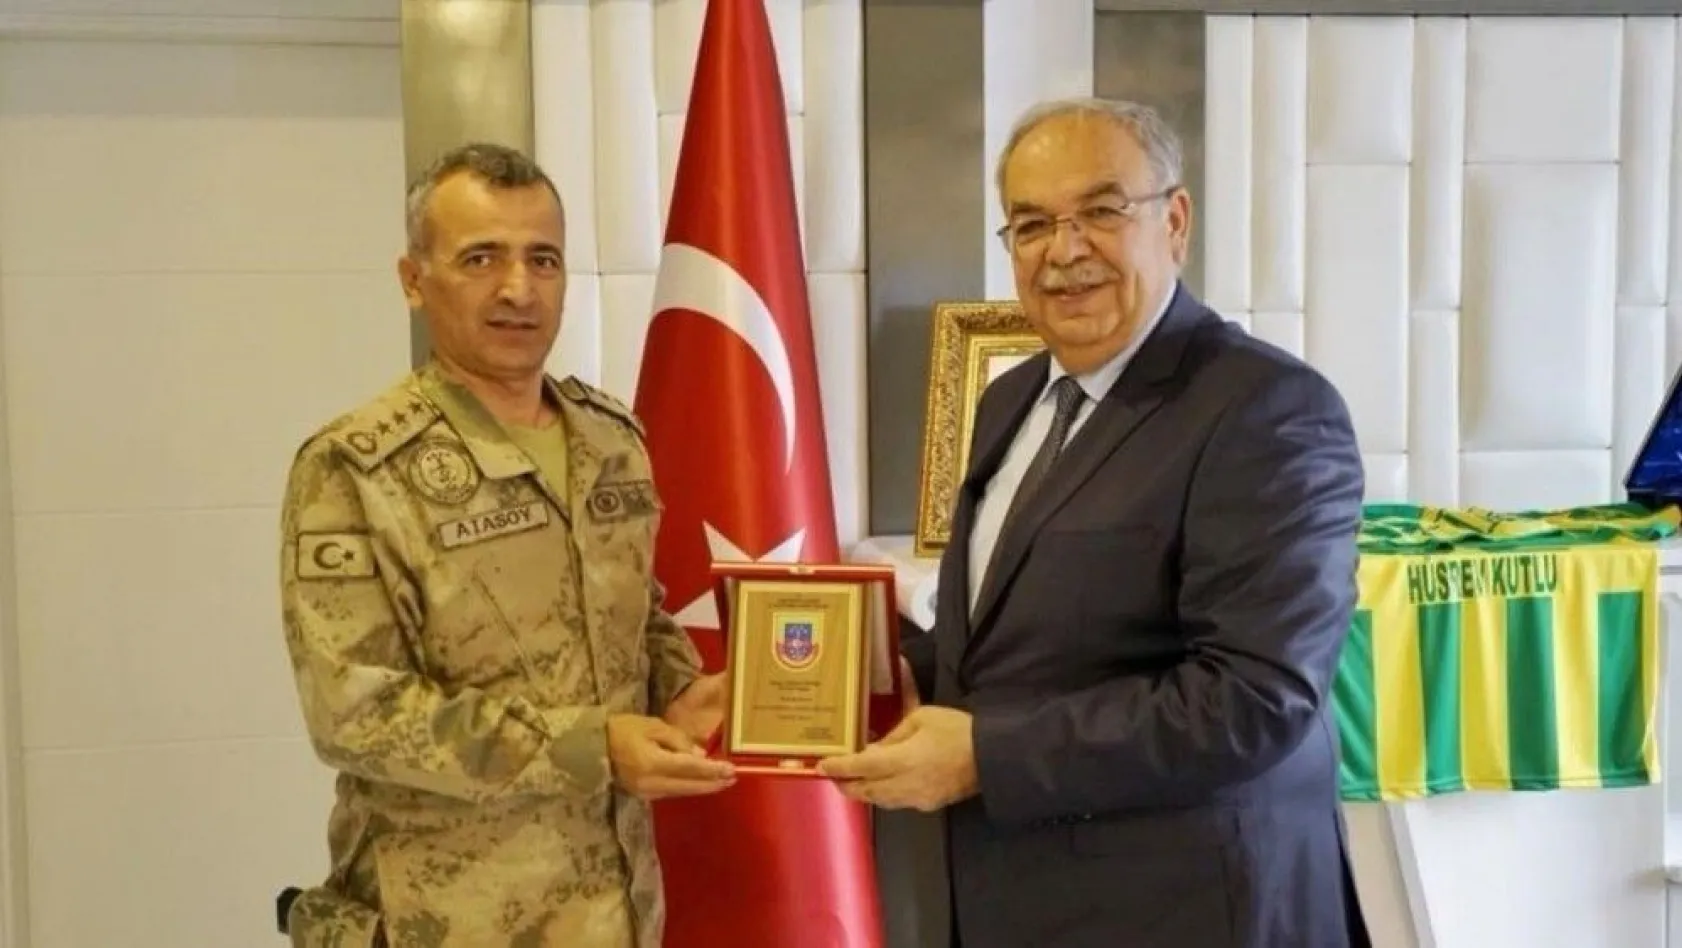 İl Jandarma Komutanı Atasoy'dan Başkan Kutlu'ya teşekkür plaketi
